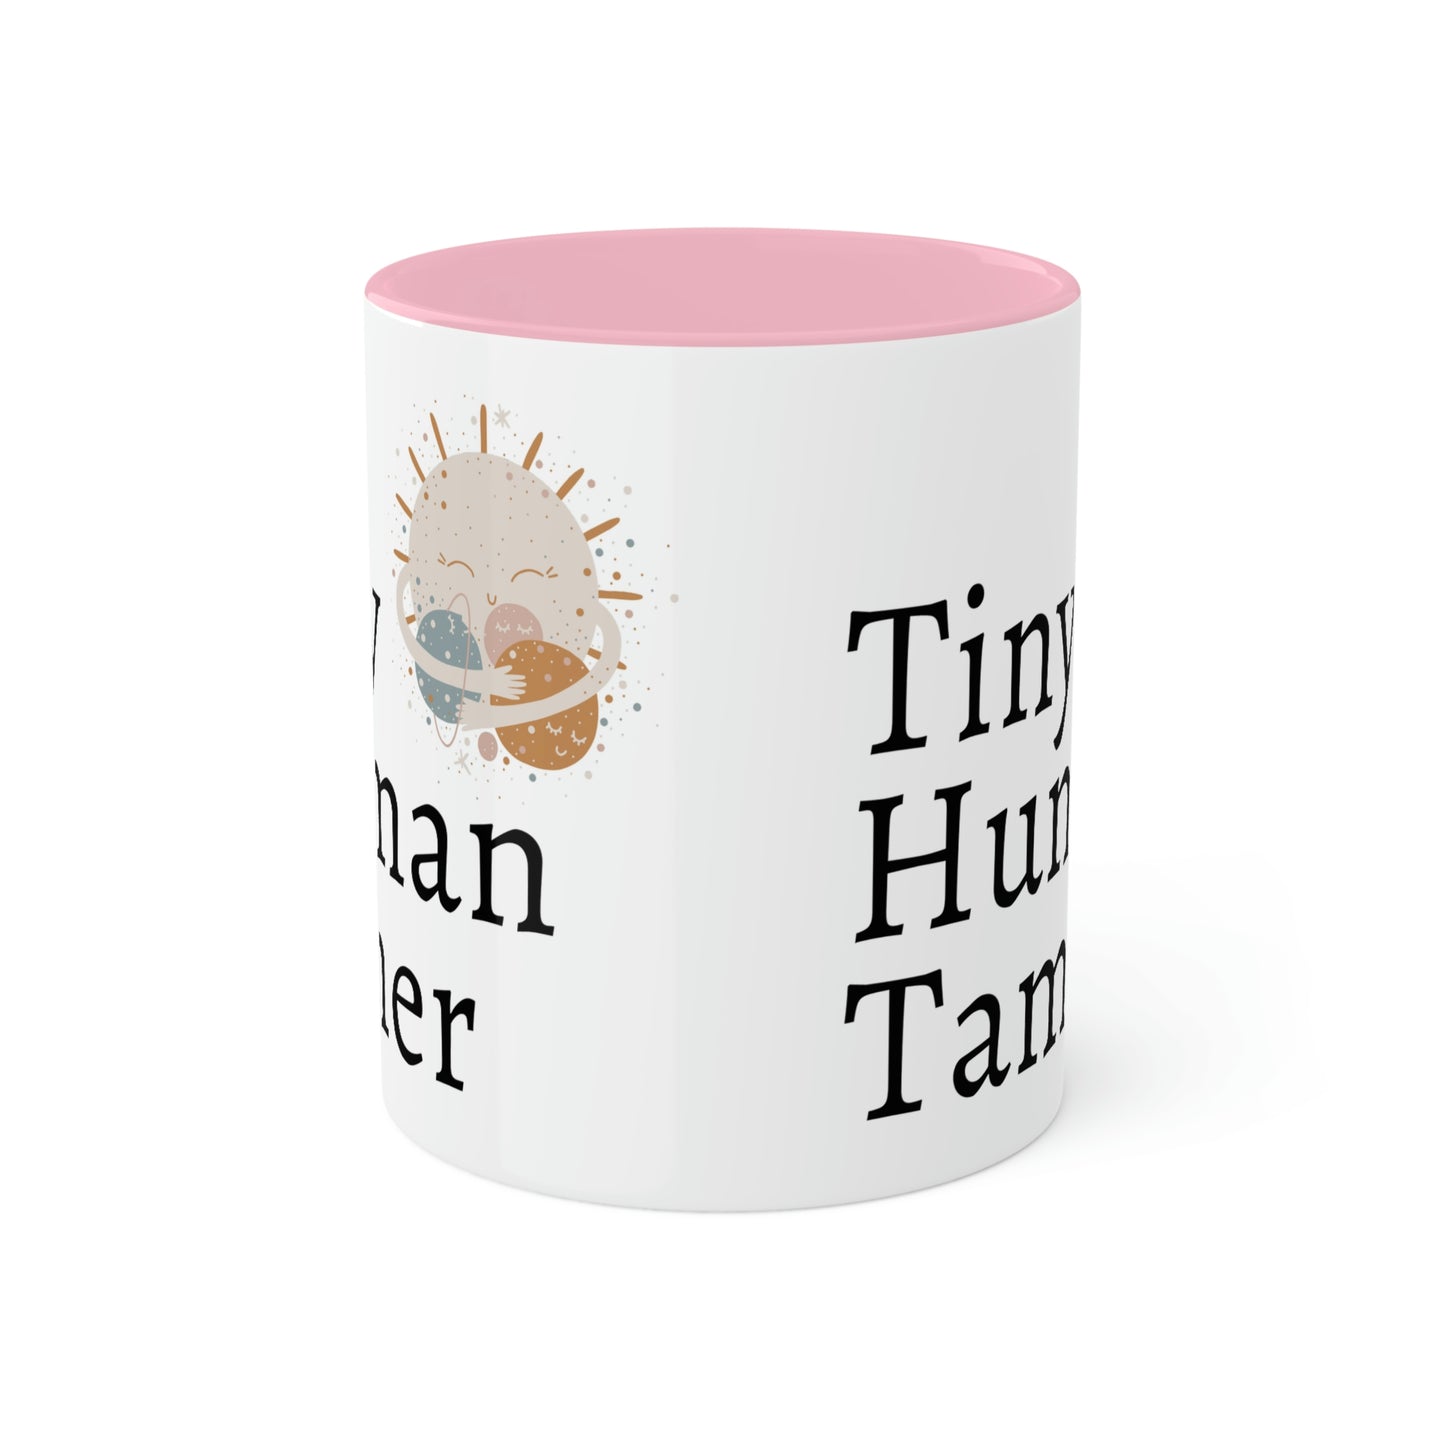 Tiny Human Tamer Mug, Parent gift, mom gift, dad gift, teacher gift, care giver gift